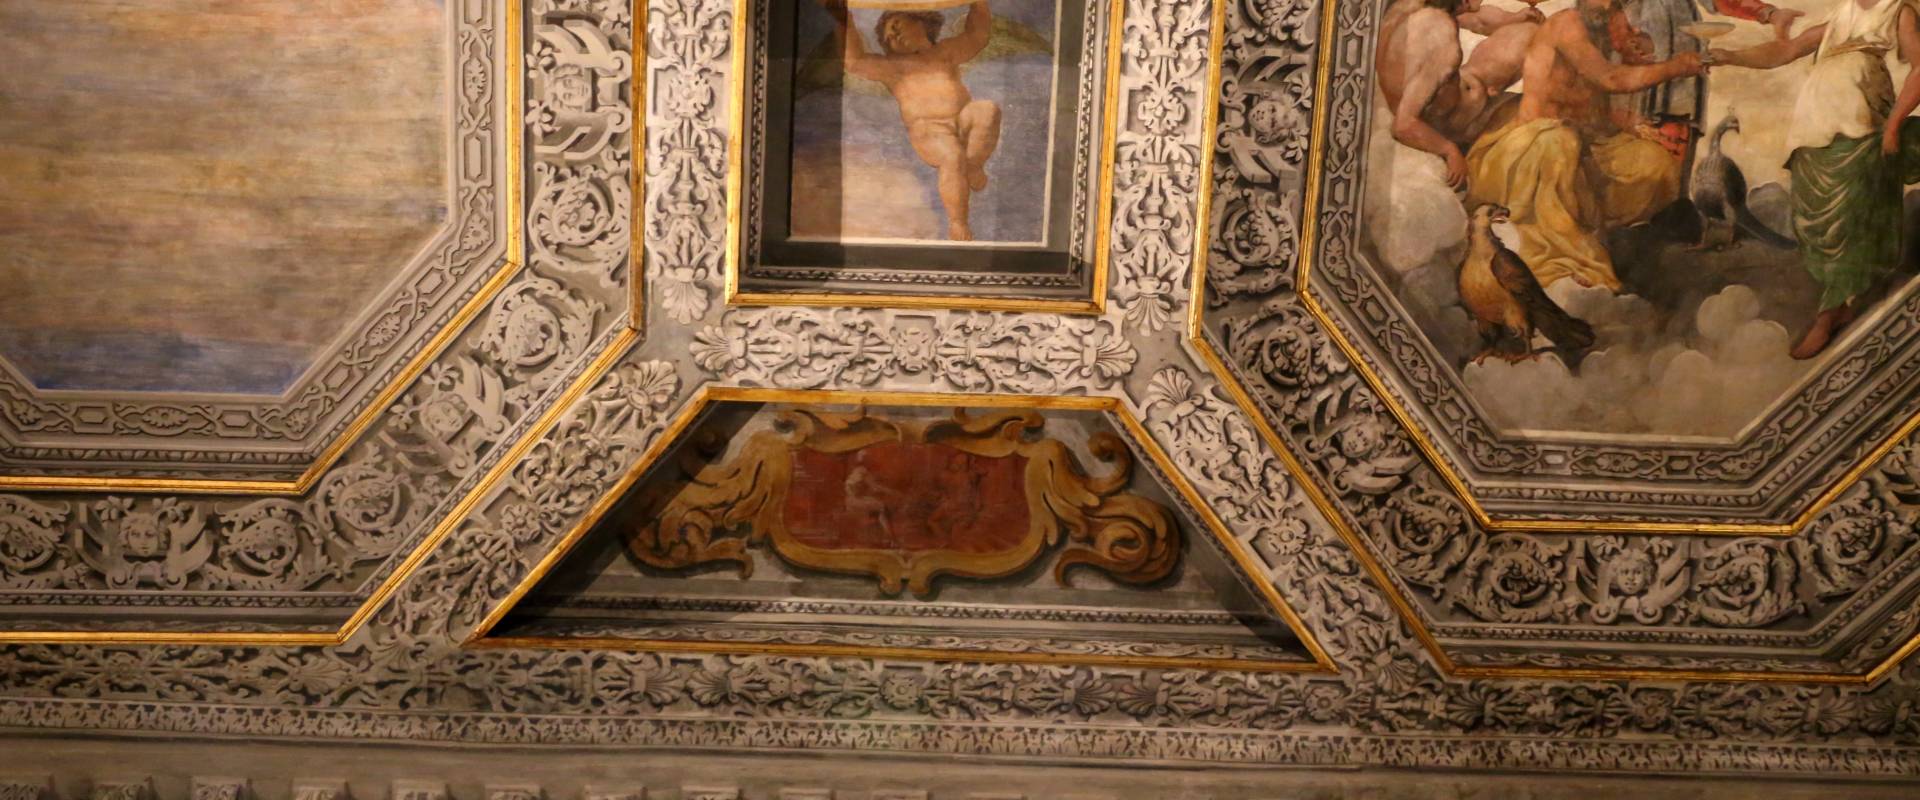 Sisto badalocchio e altri, soffitto della sala di giove, 1603, 08 photo by Sailko